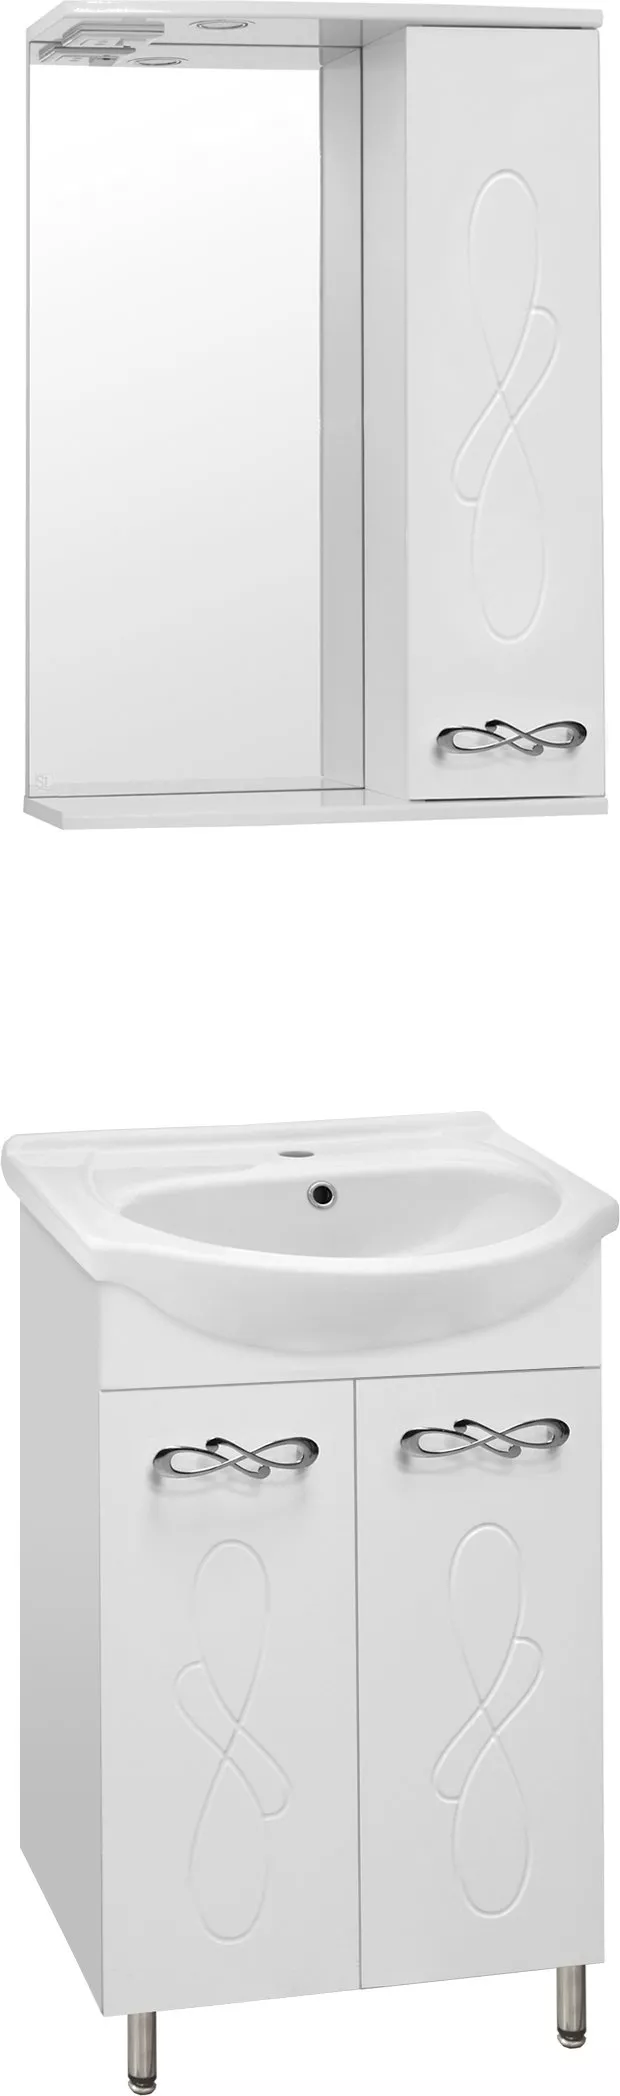 Мебель для ванной Style Line Венеция 55 белая, размер 56, цвет белый - фото 1